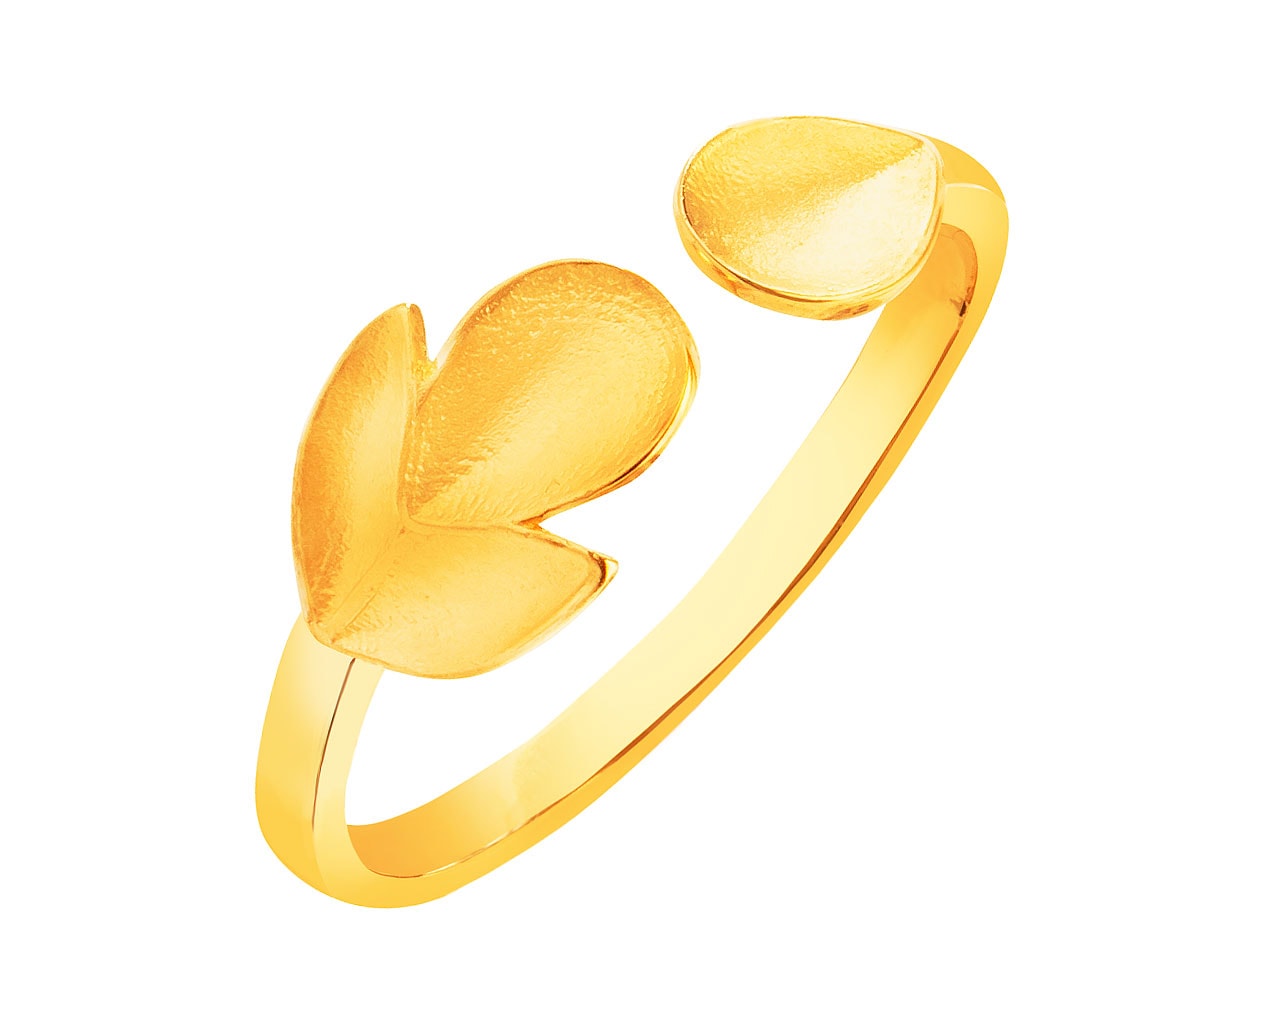 Złoty pierścionek - liść